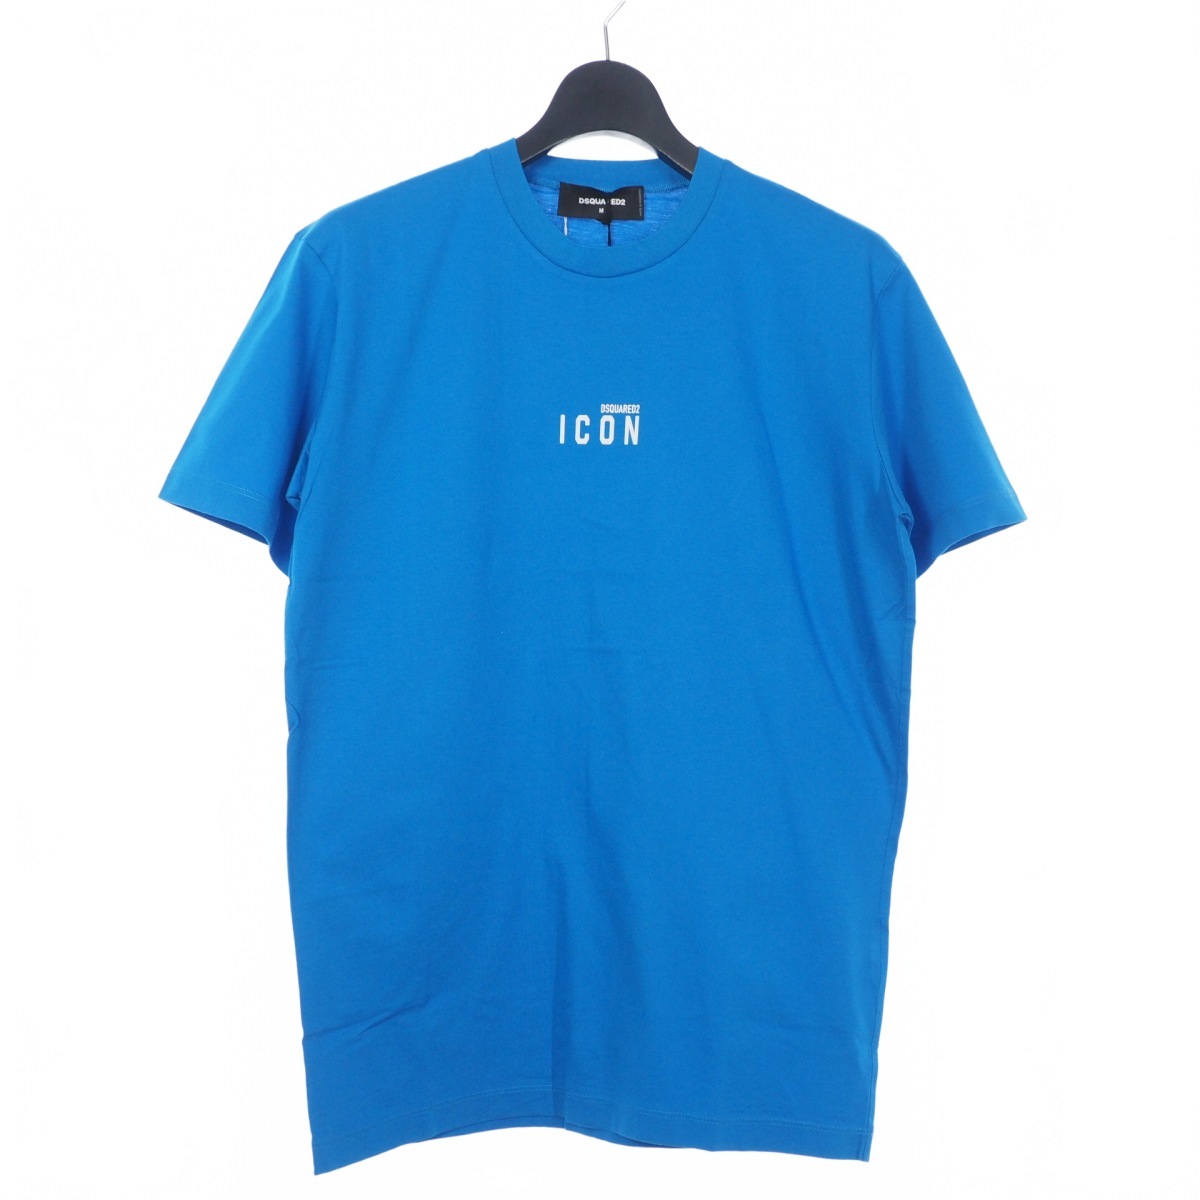 ディースクエアード DSQUARED2 22SS Icon Mini Logo Tシャツ カットソー 半袖 クルーネック M ブルー 青 S79GC0010 国内正規 メンズ